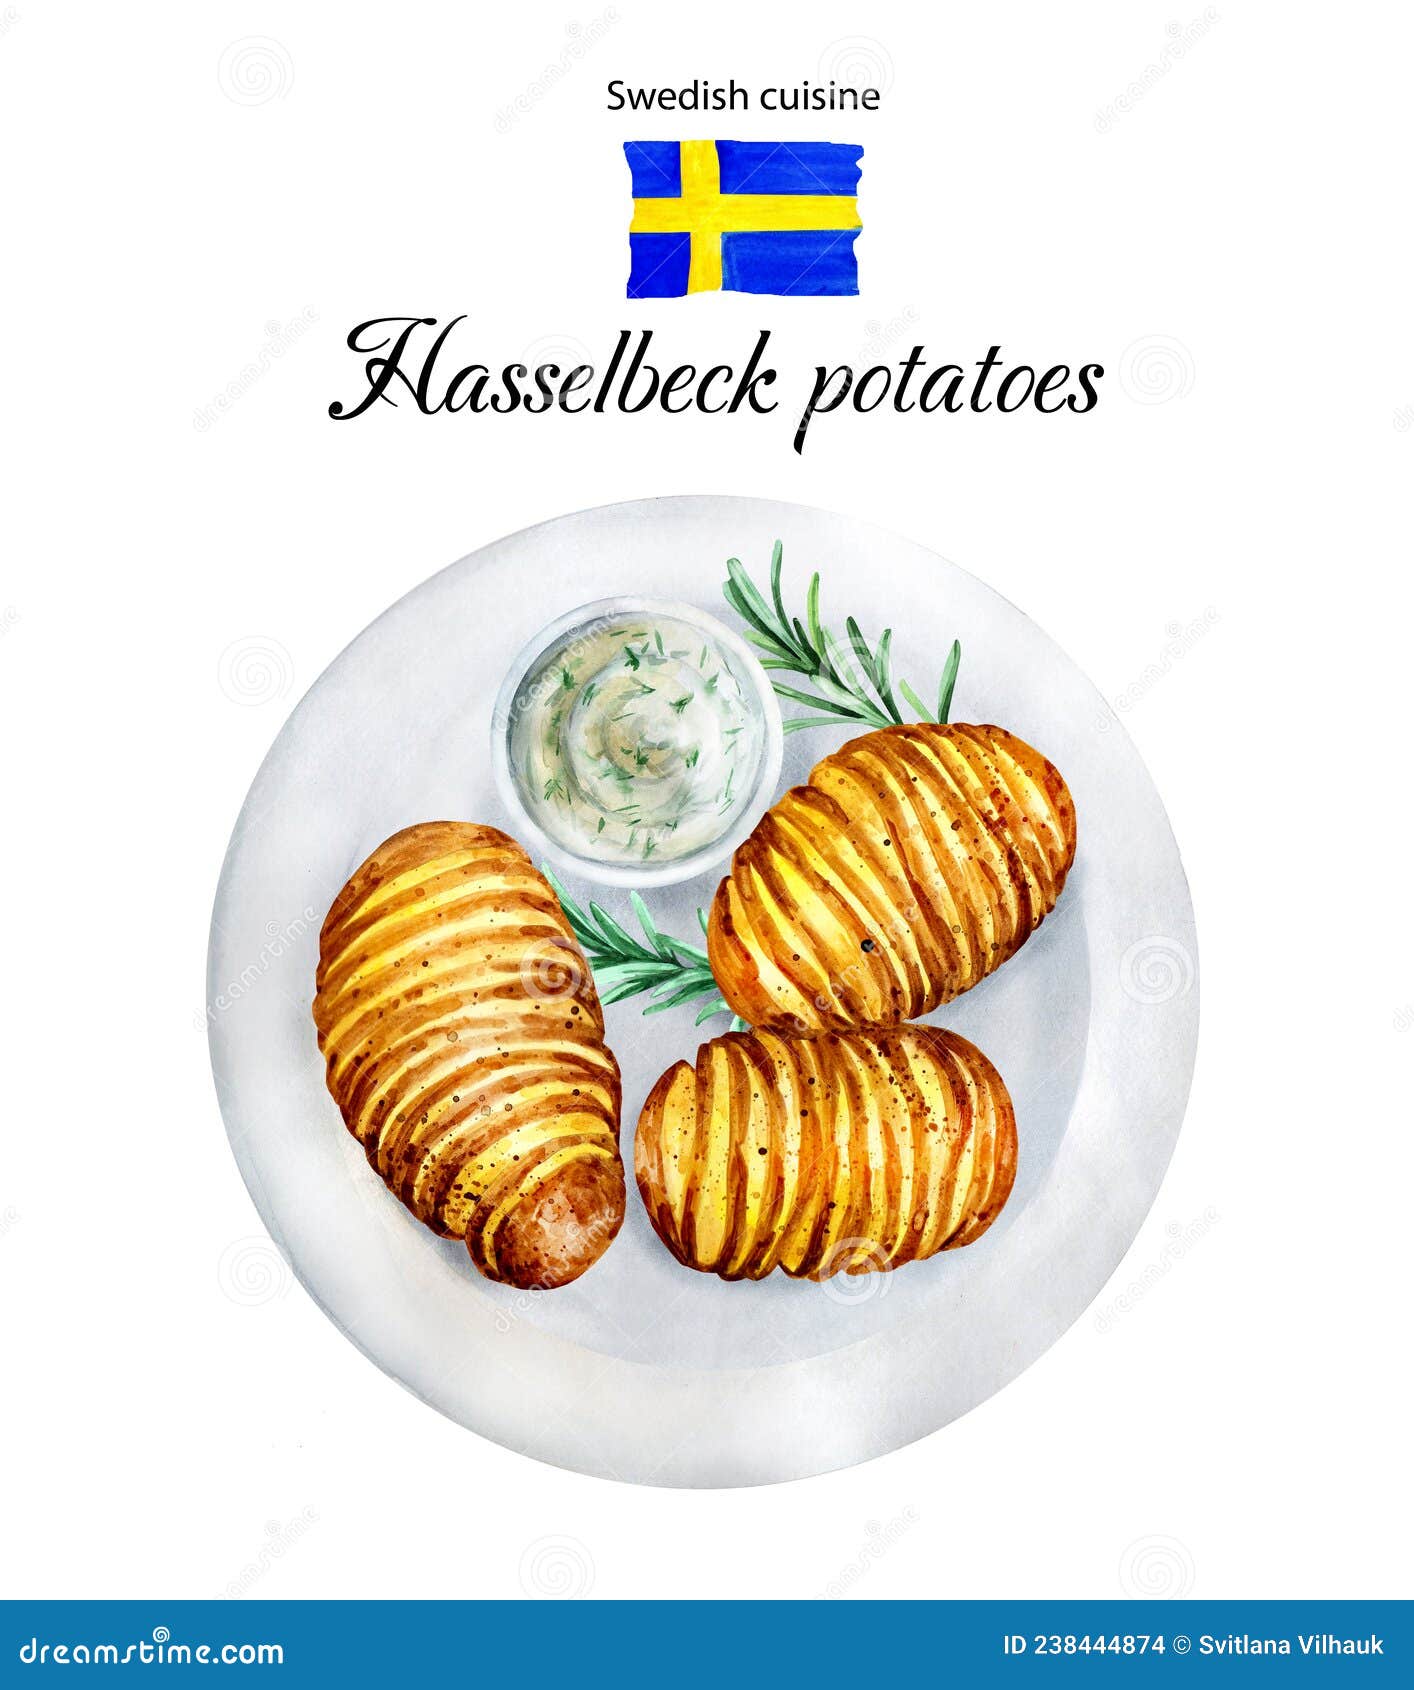 File:Schwedische Spargelkartoffel (potatoe) jm154787.jpg - Wikimedia Commons